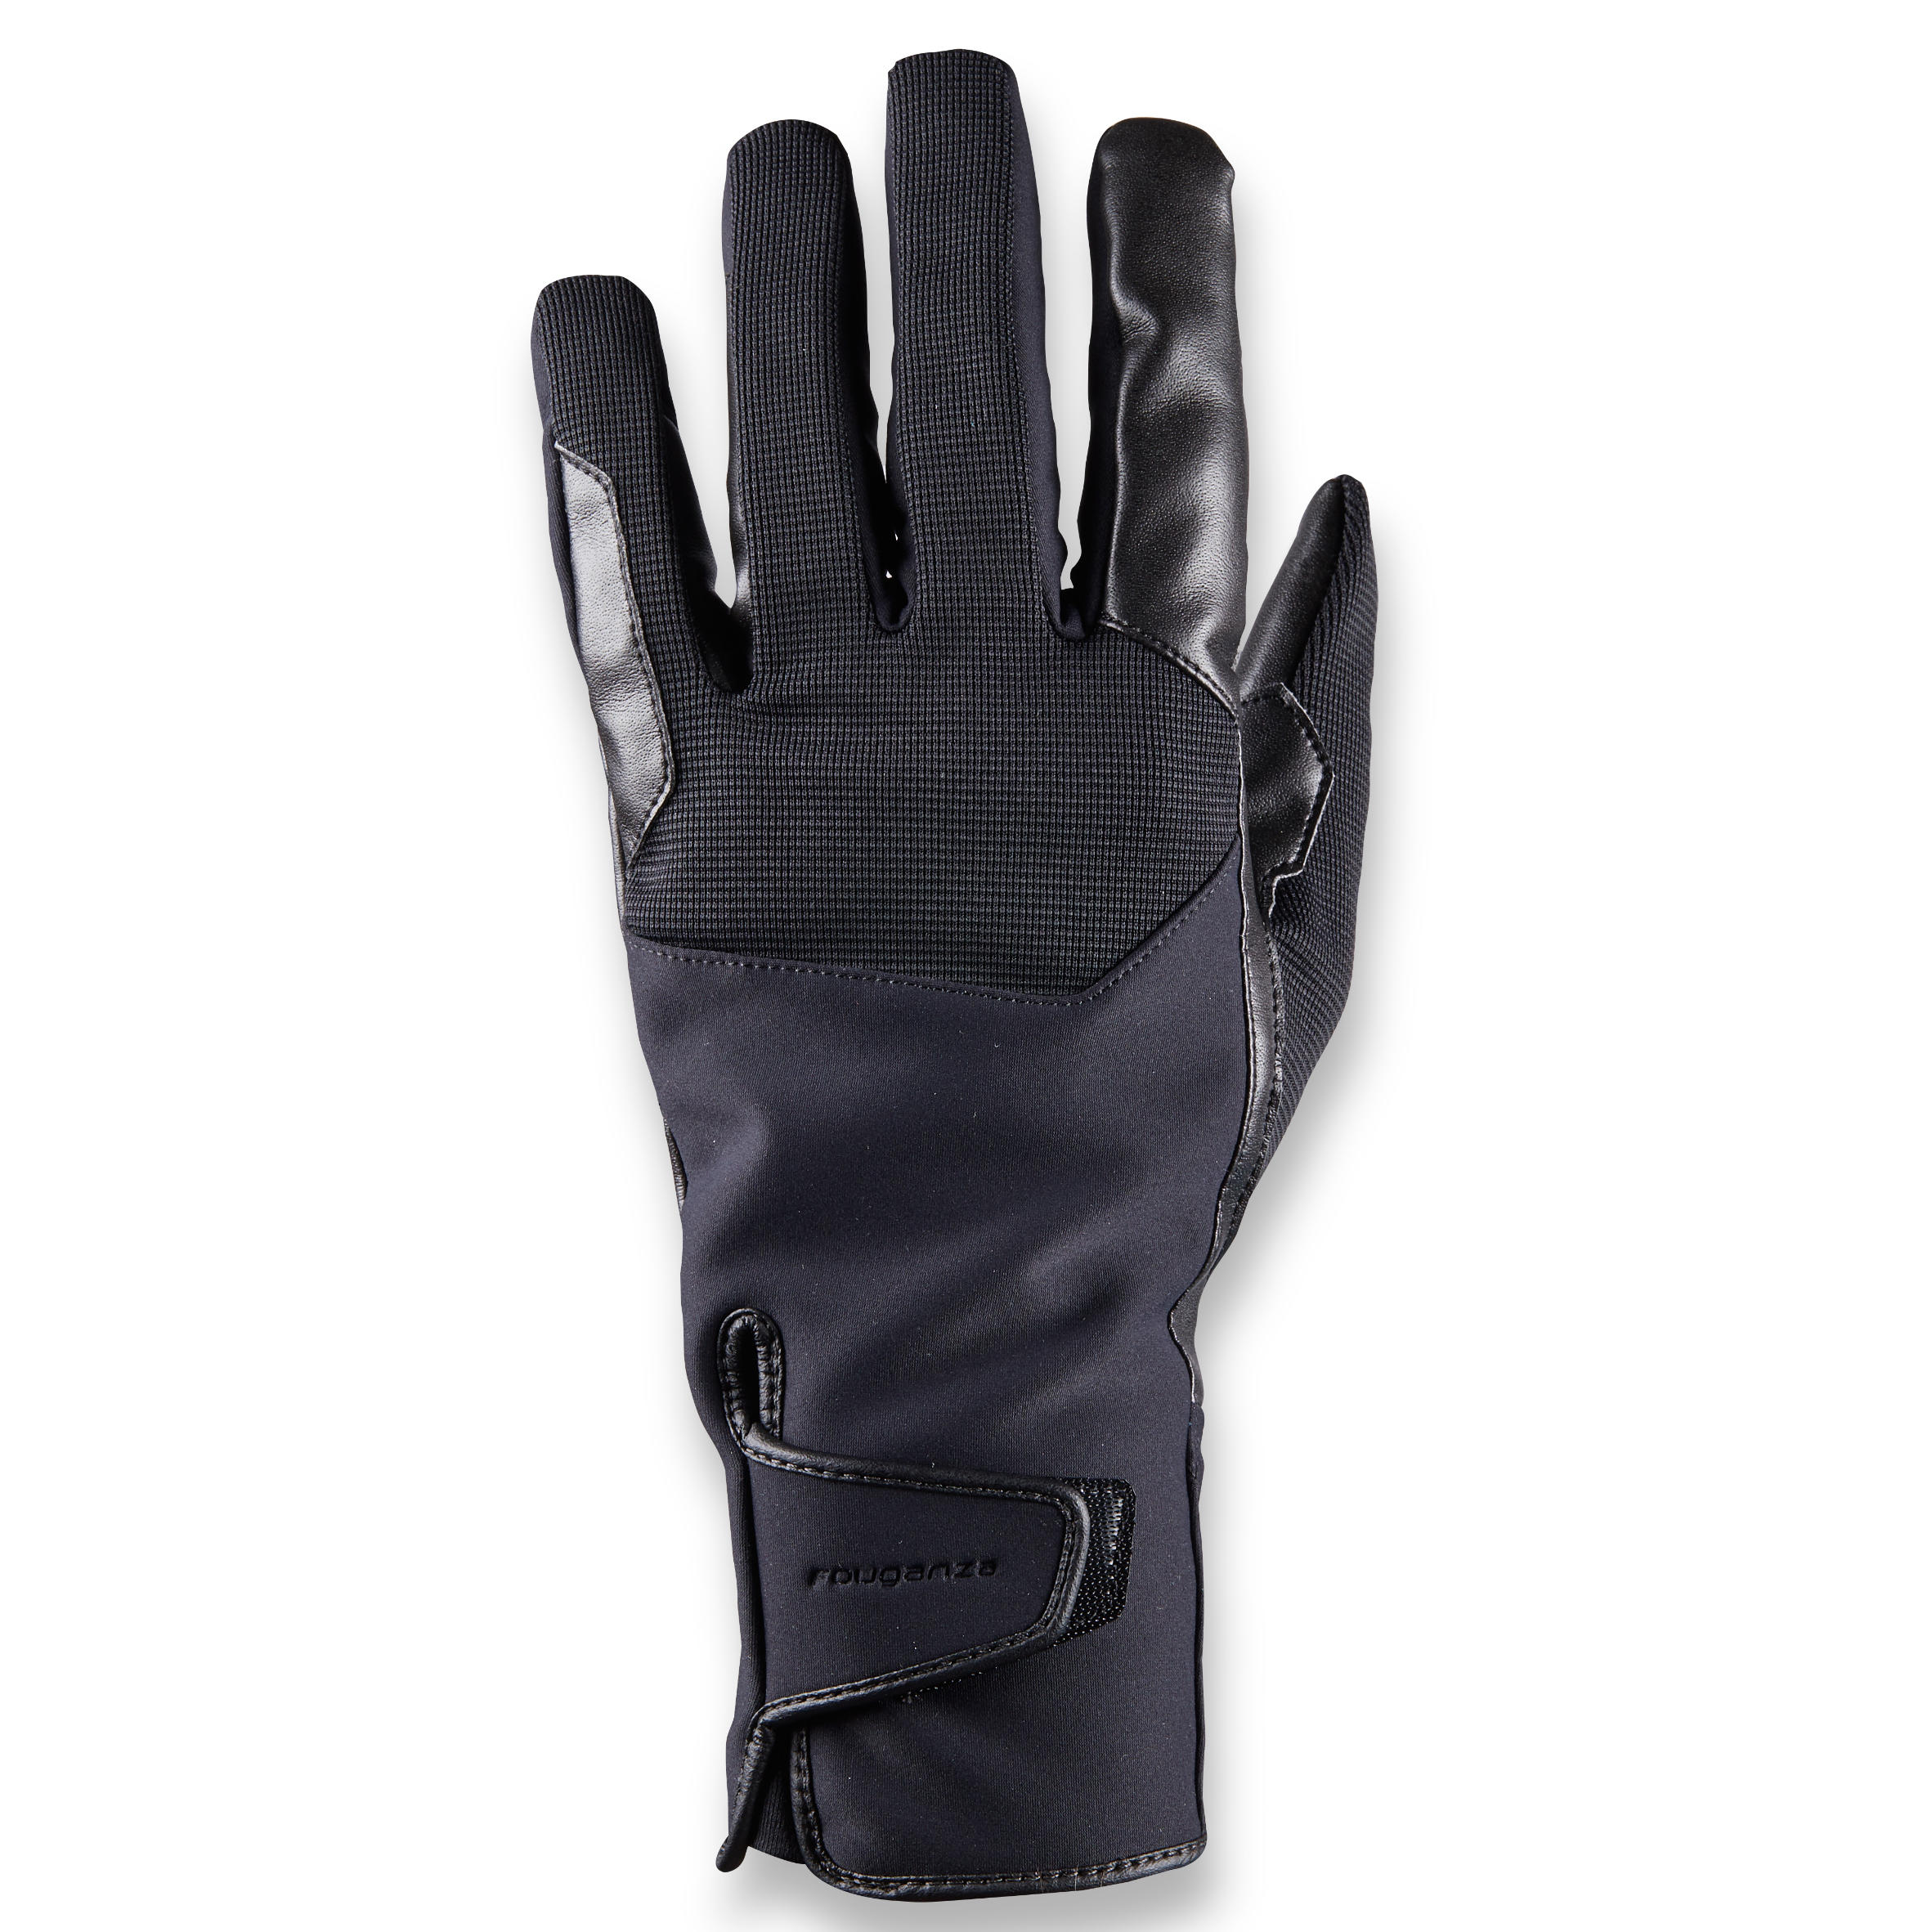 gants chauds d'équitation homme 560 warm noir - fouganza